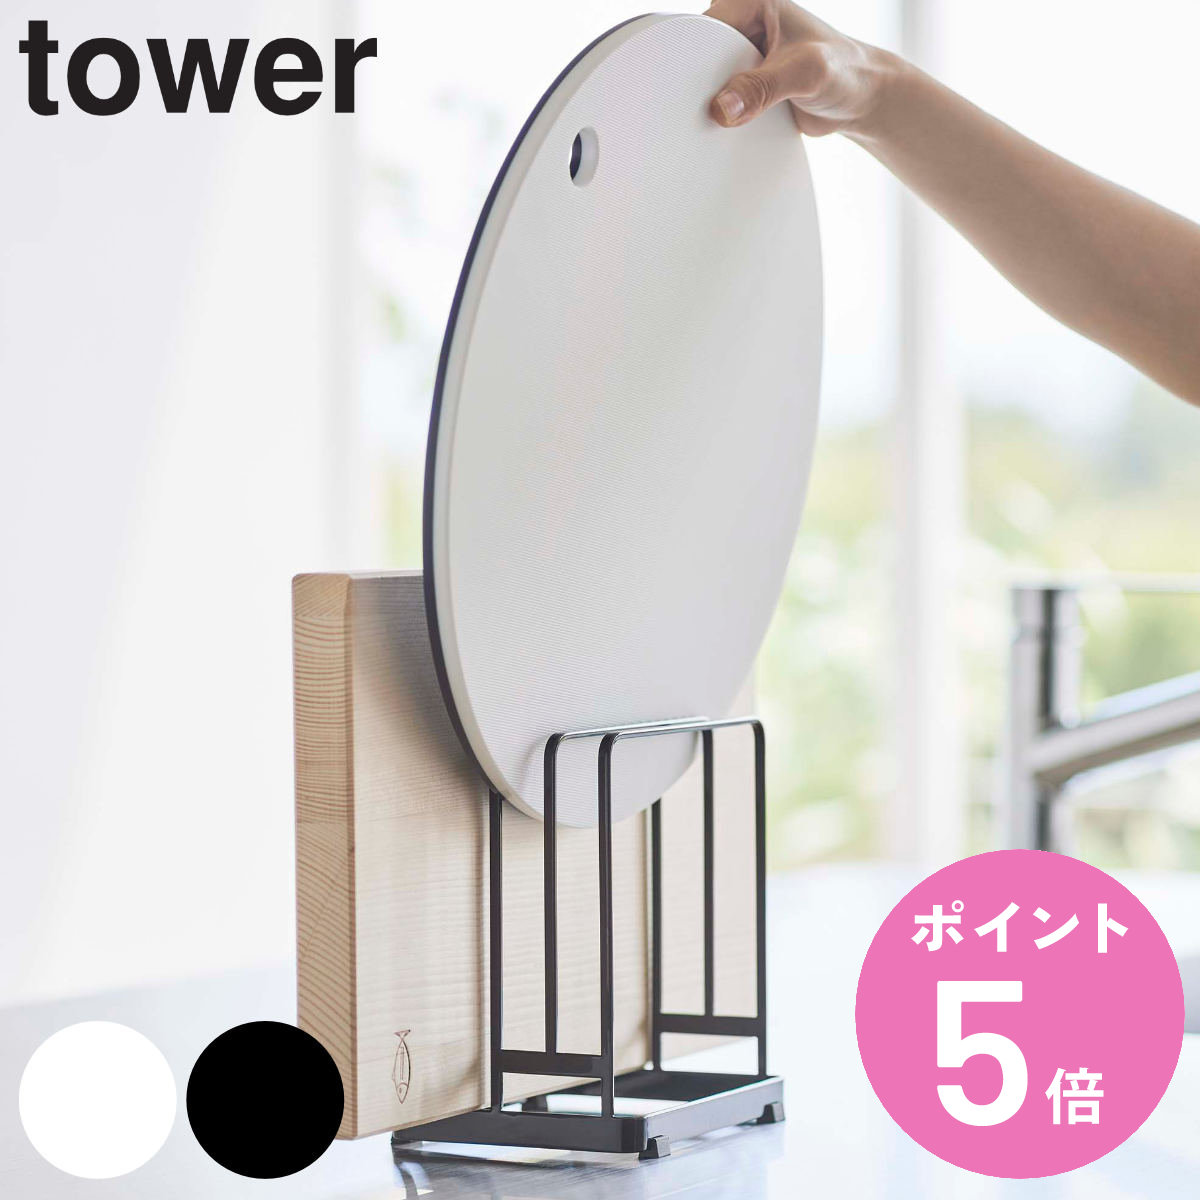 山崎実業 tower 丸いまな板が置ける まな板スタンド タワー （ タワーシリーズ まな板立て 3枚 まな板置き まな板用スタンド まな板 収納